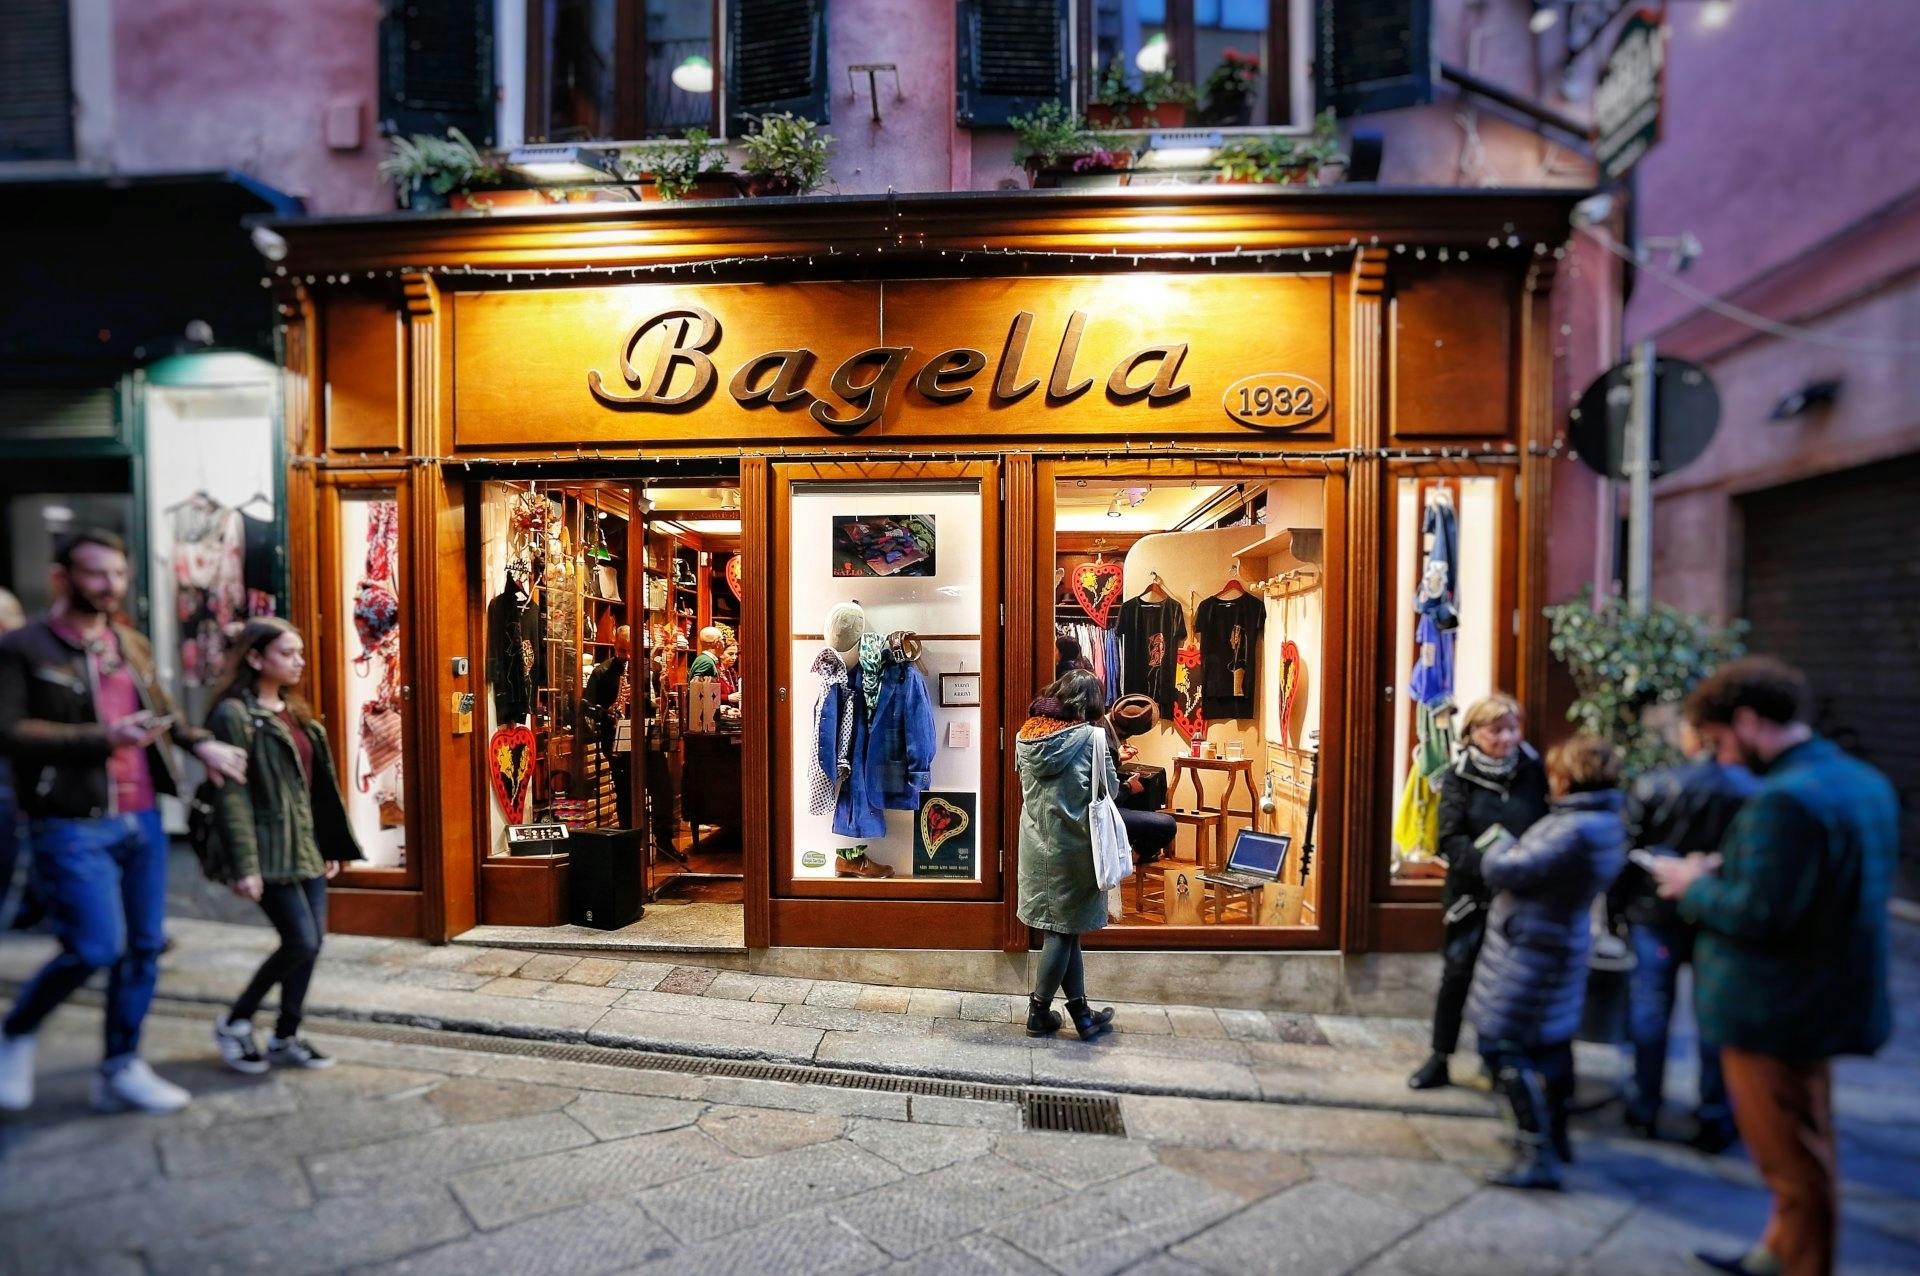 Visita a uma loja histórica de roupas tradicionais da Sardenha